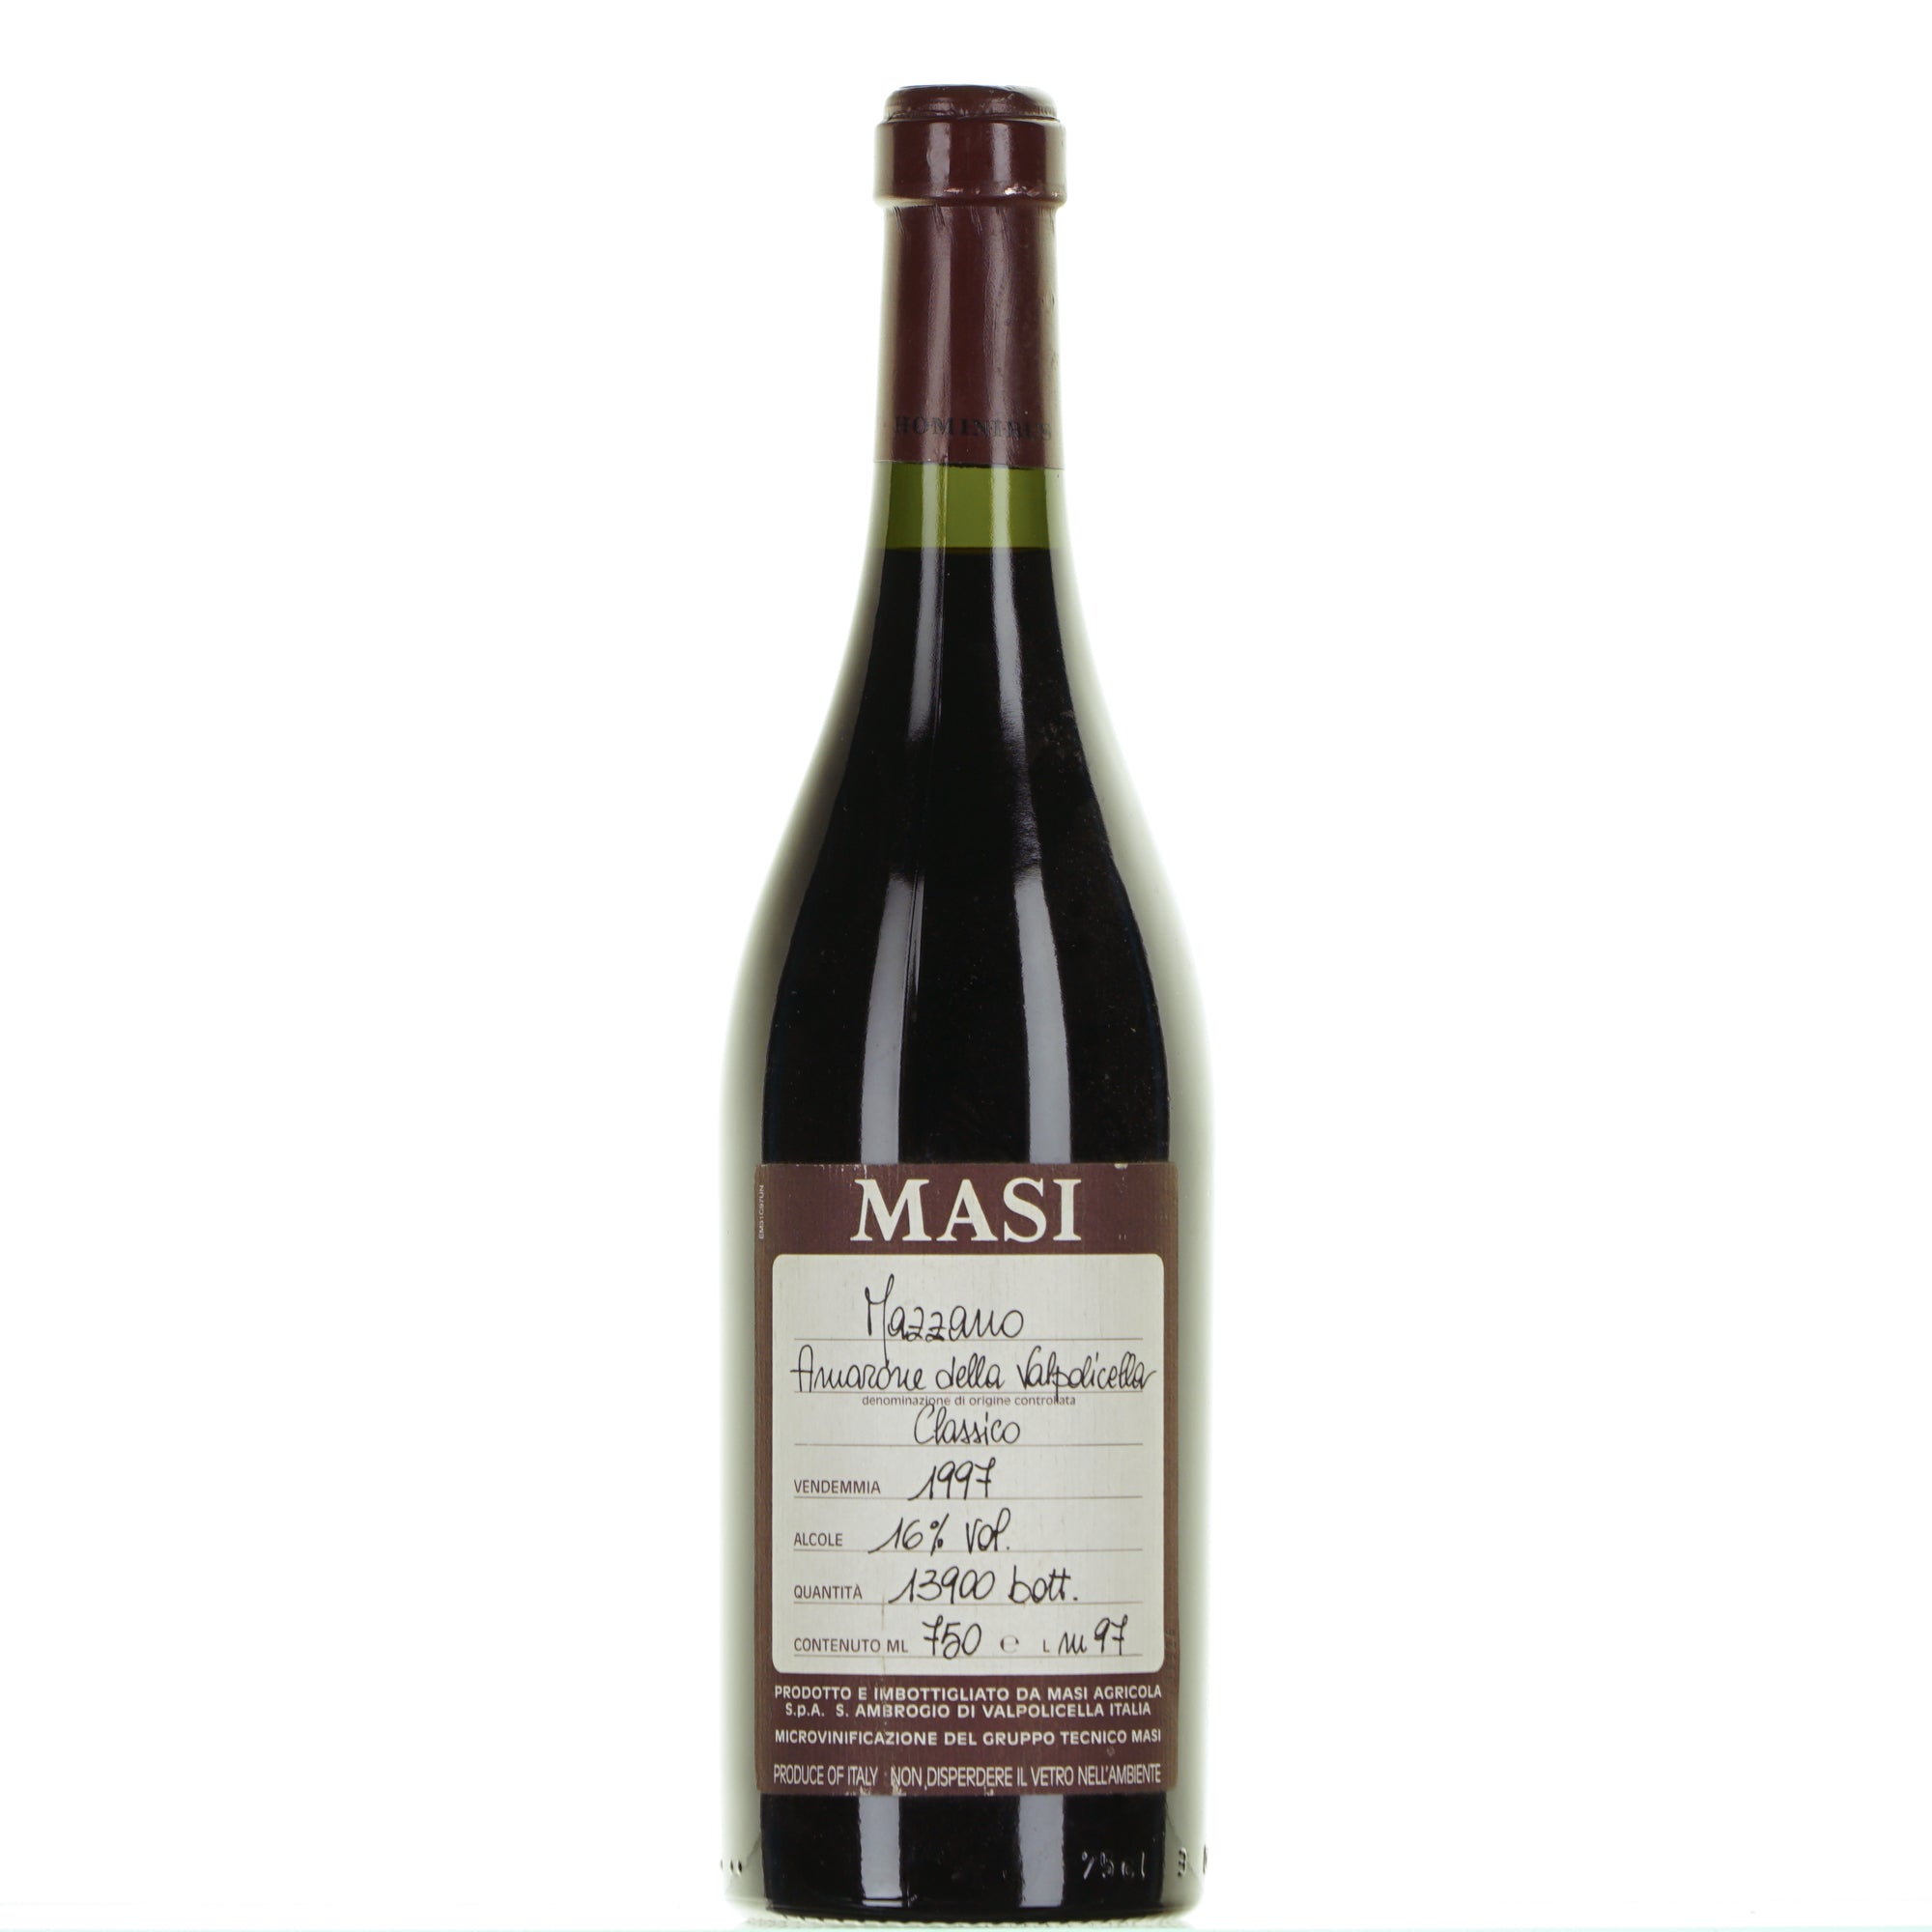 Amarone della Valpolicella 1997 Mazzano Masi lt.0.750